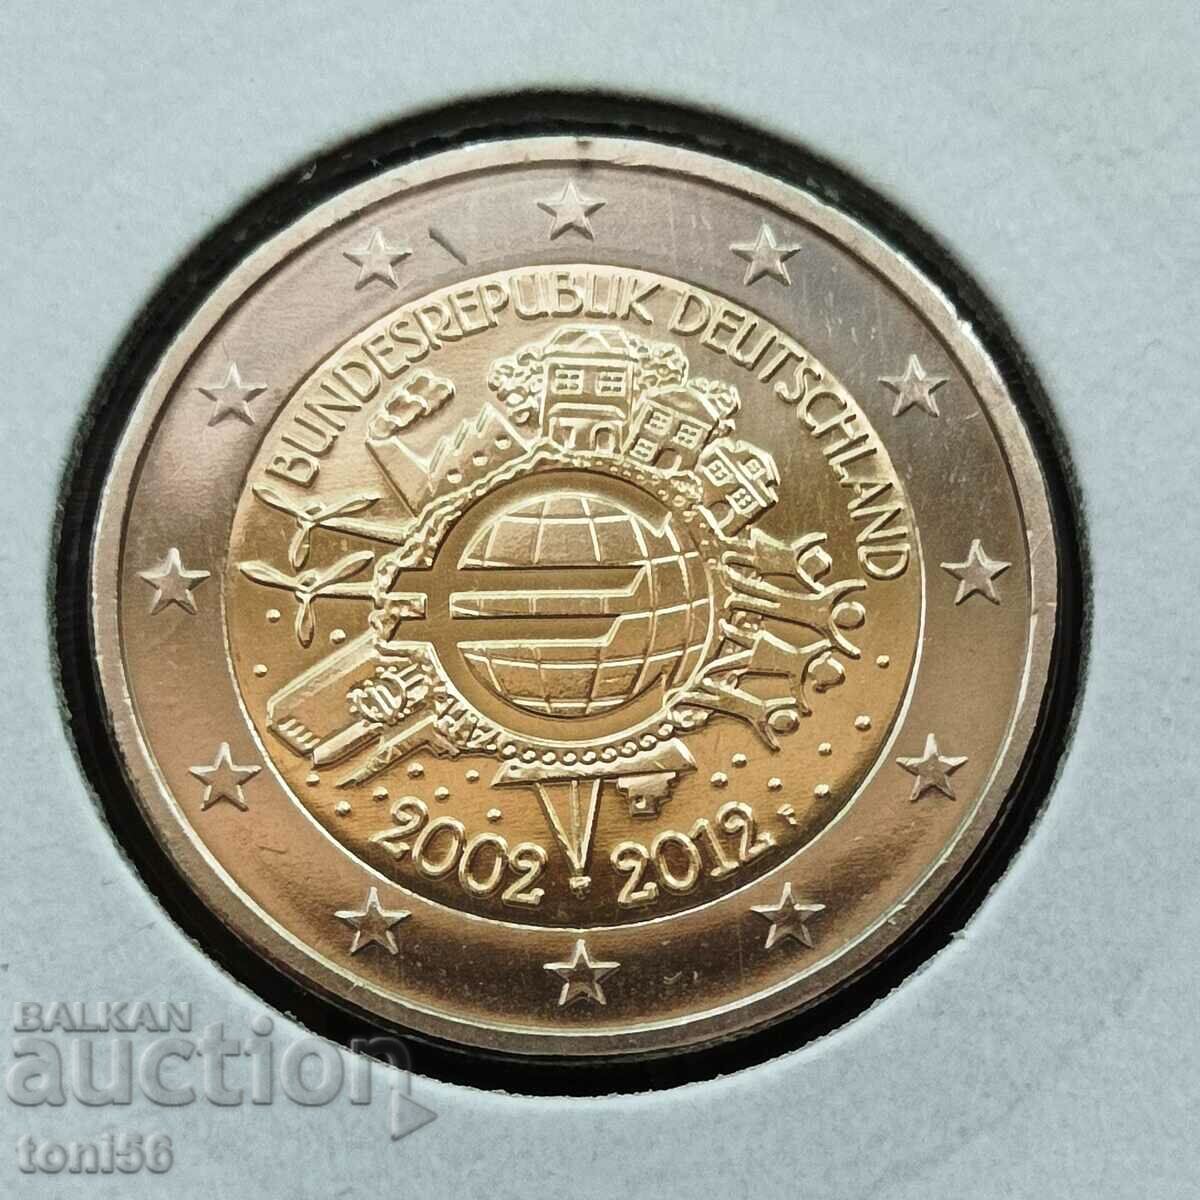 Γερμανία 2 ευρώ 2012 F - 10 χρόνια "Κέρματα και τραπεζογραμμάτια ευρώ"